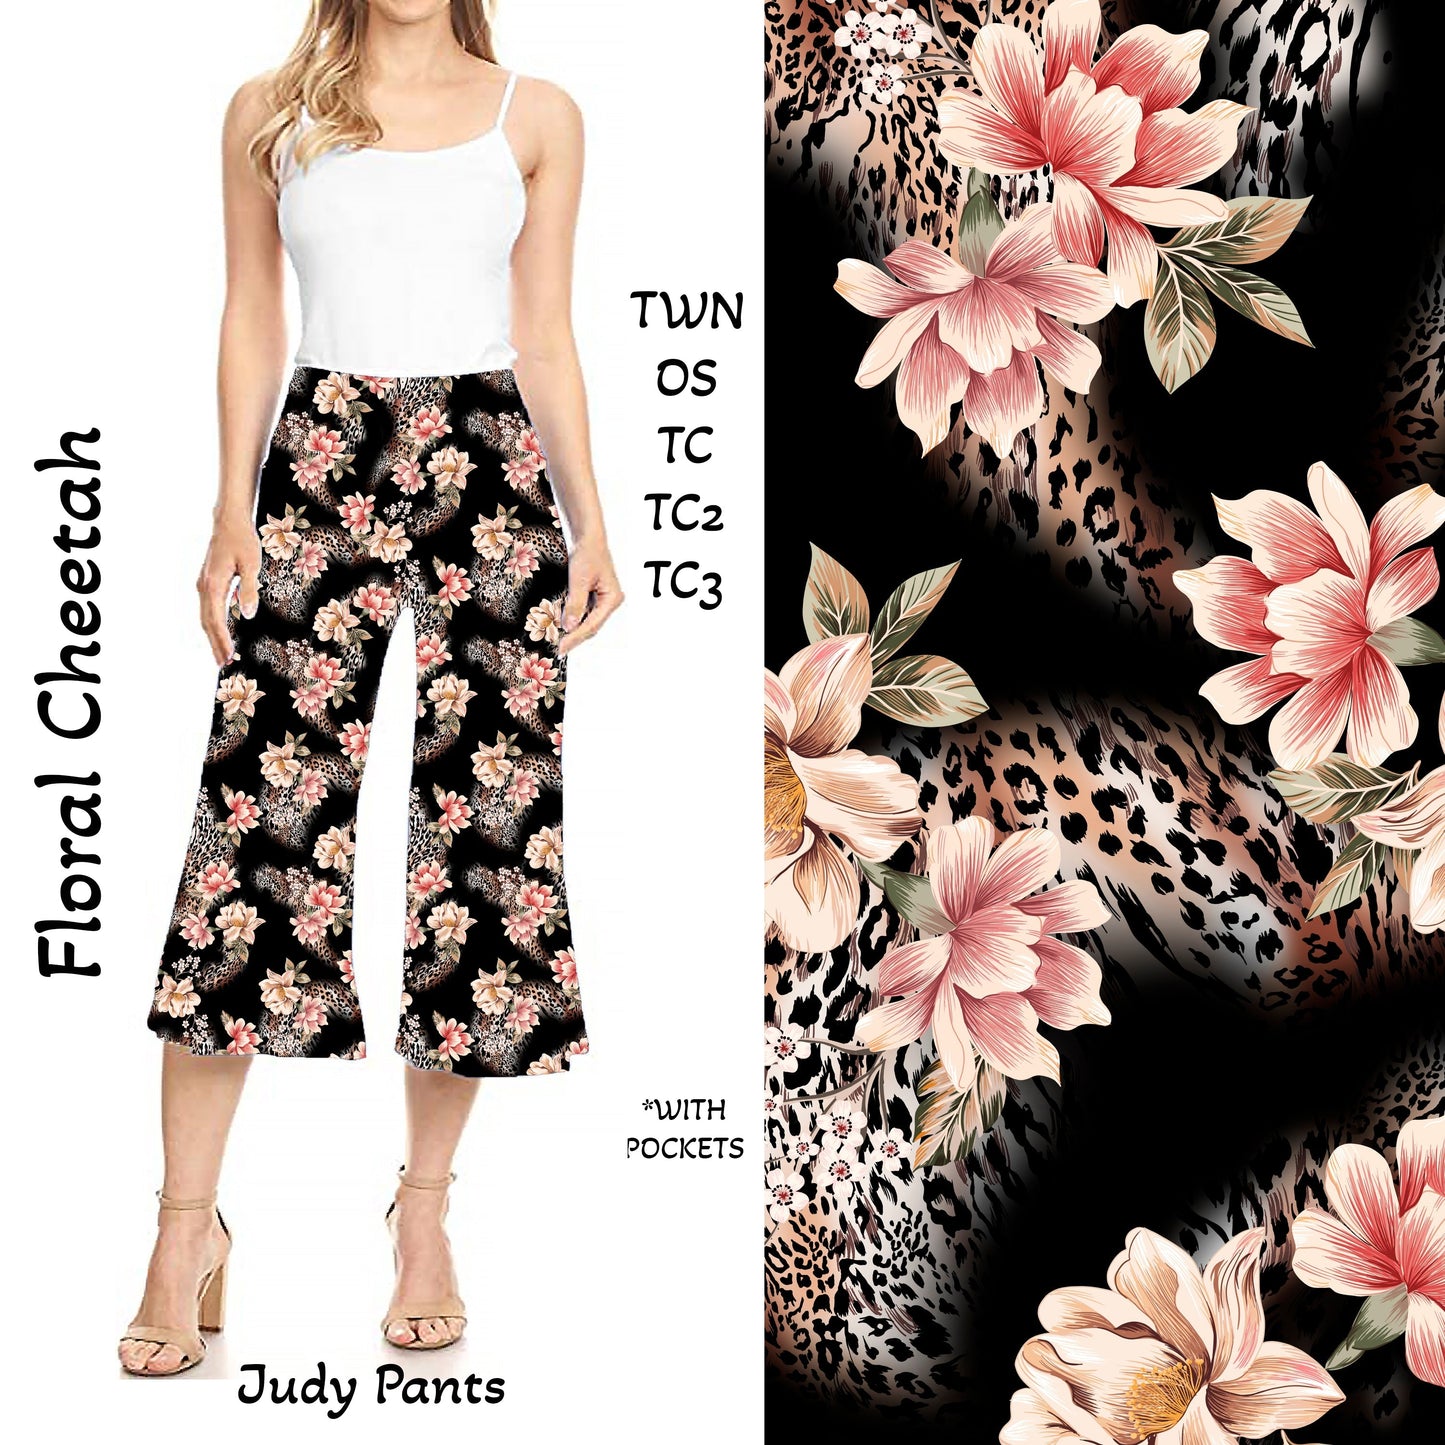 Floral Cheetah Judy Pants with Pockets